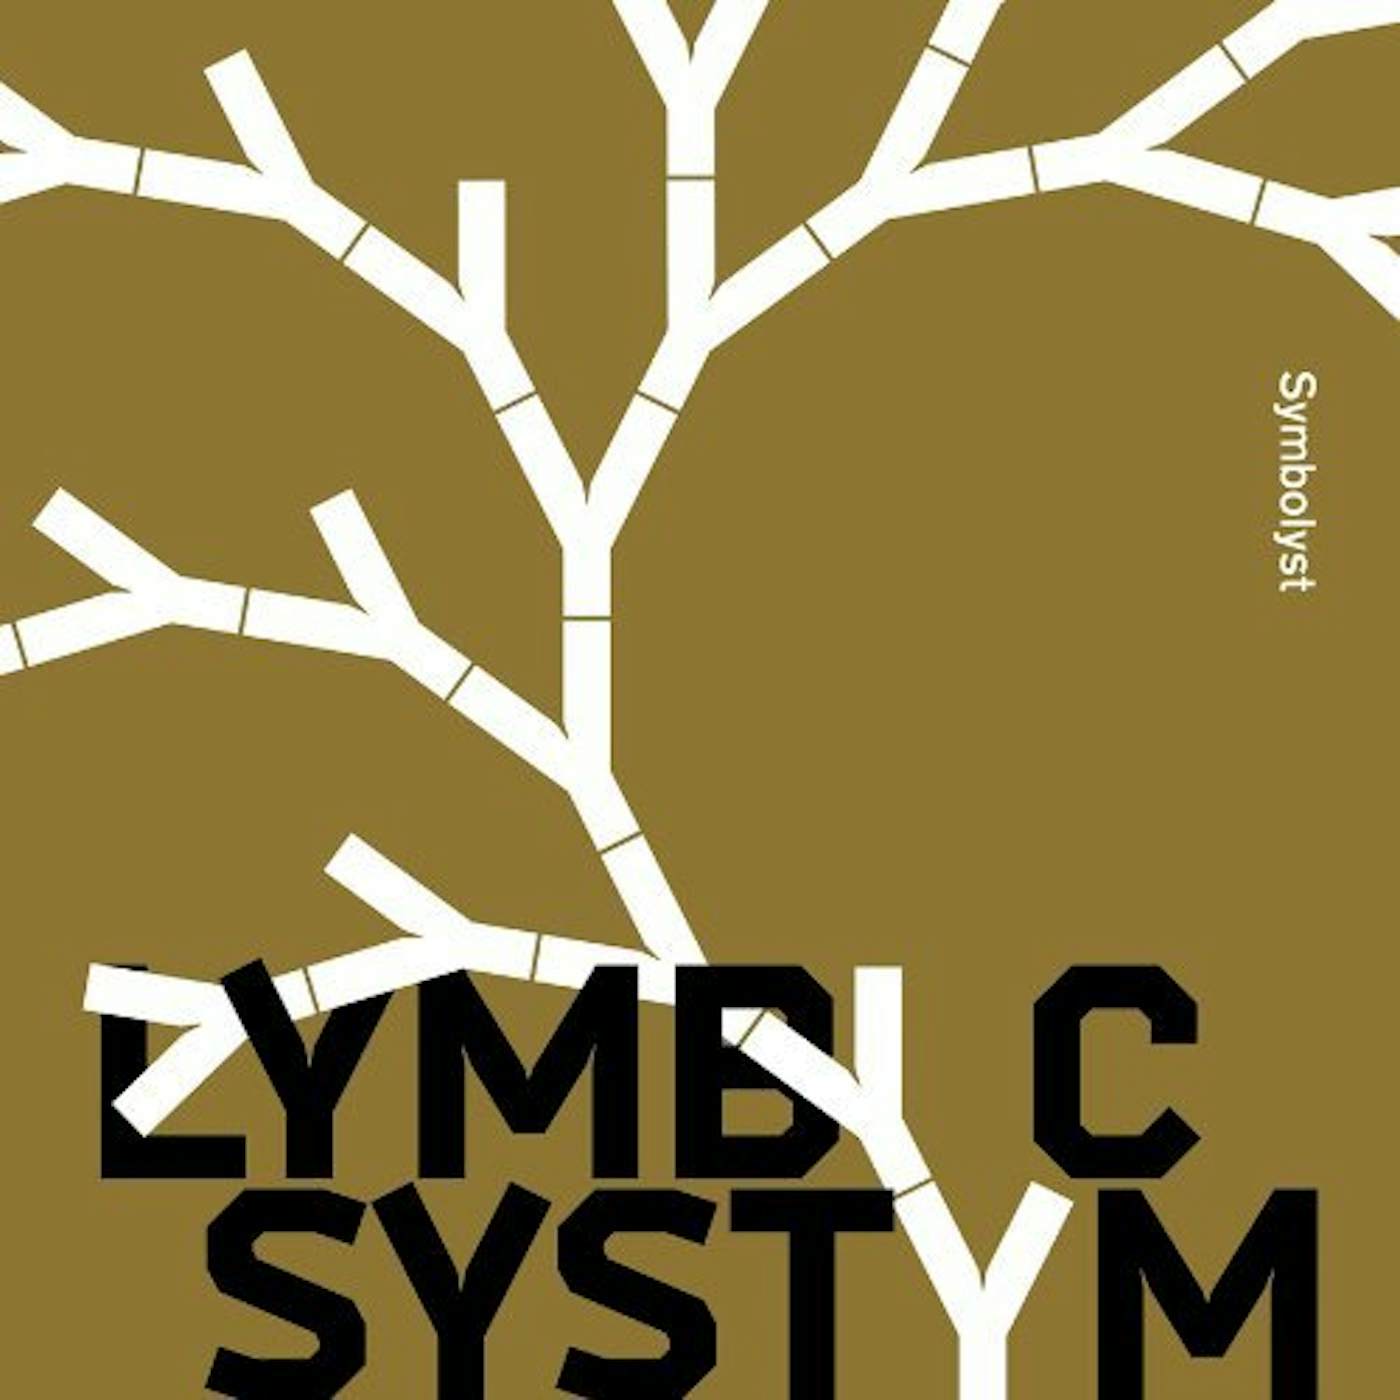 Lymbyc Systym Symbolyst Vinyl Record